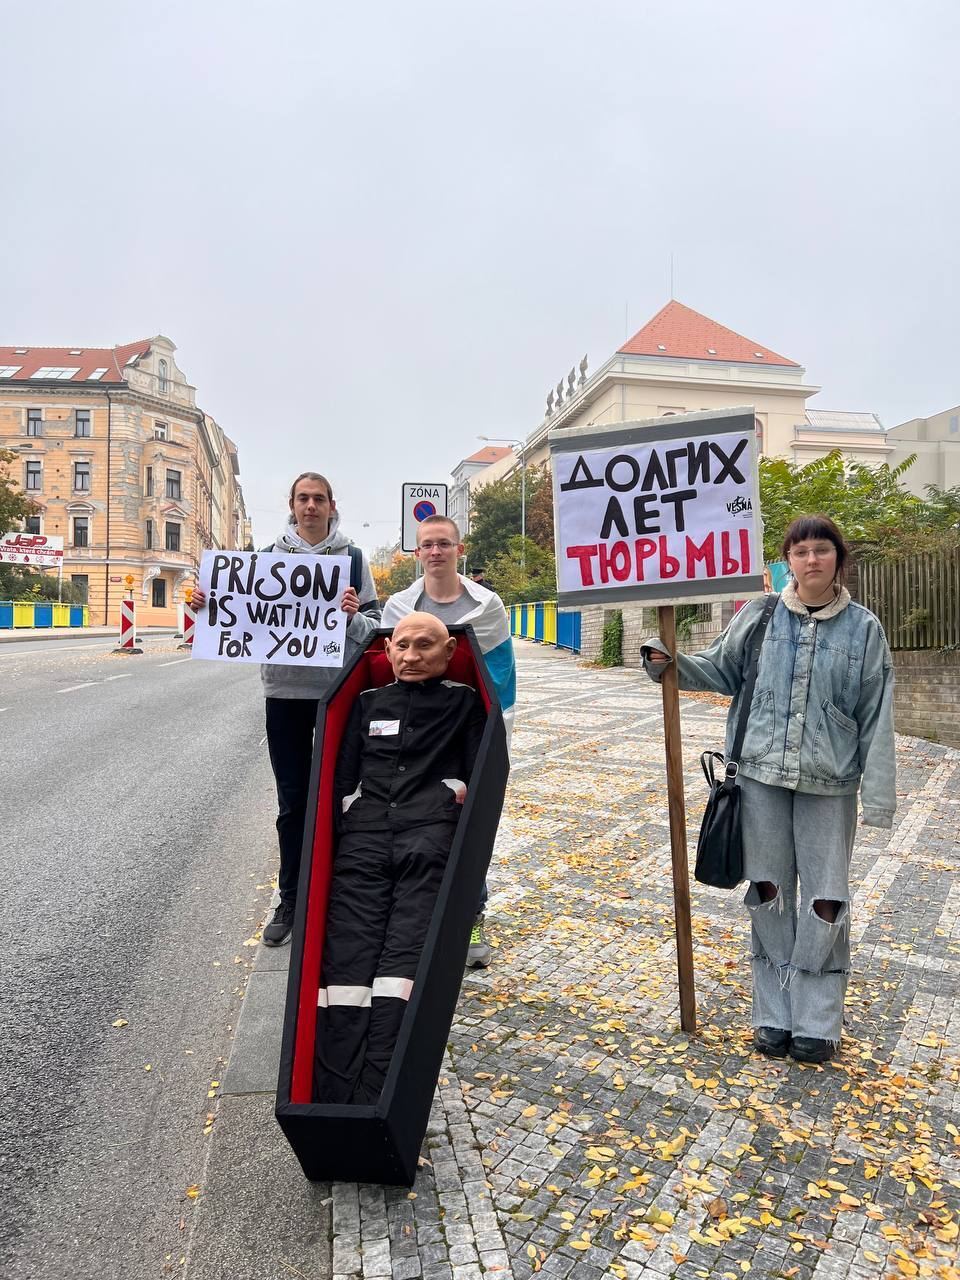 "Довгих років тюрми": в Празі активісти провели сміливу акцію біля посольства РФ до дня народження Путіна. Фото і відео